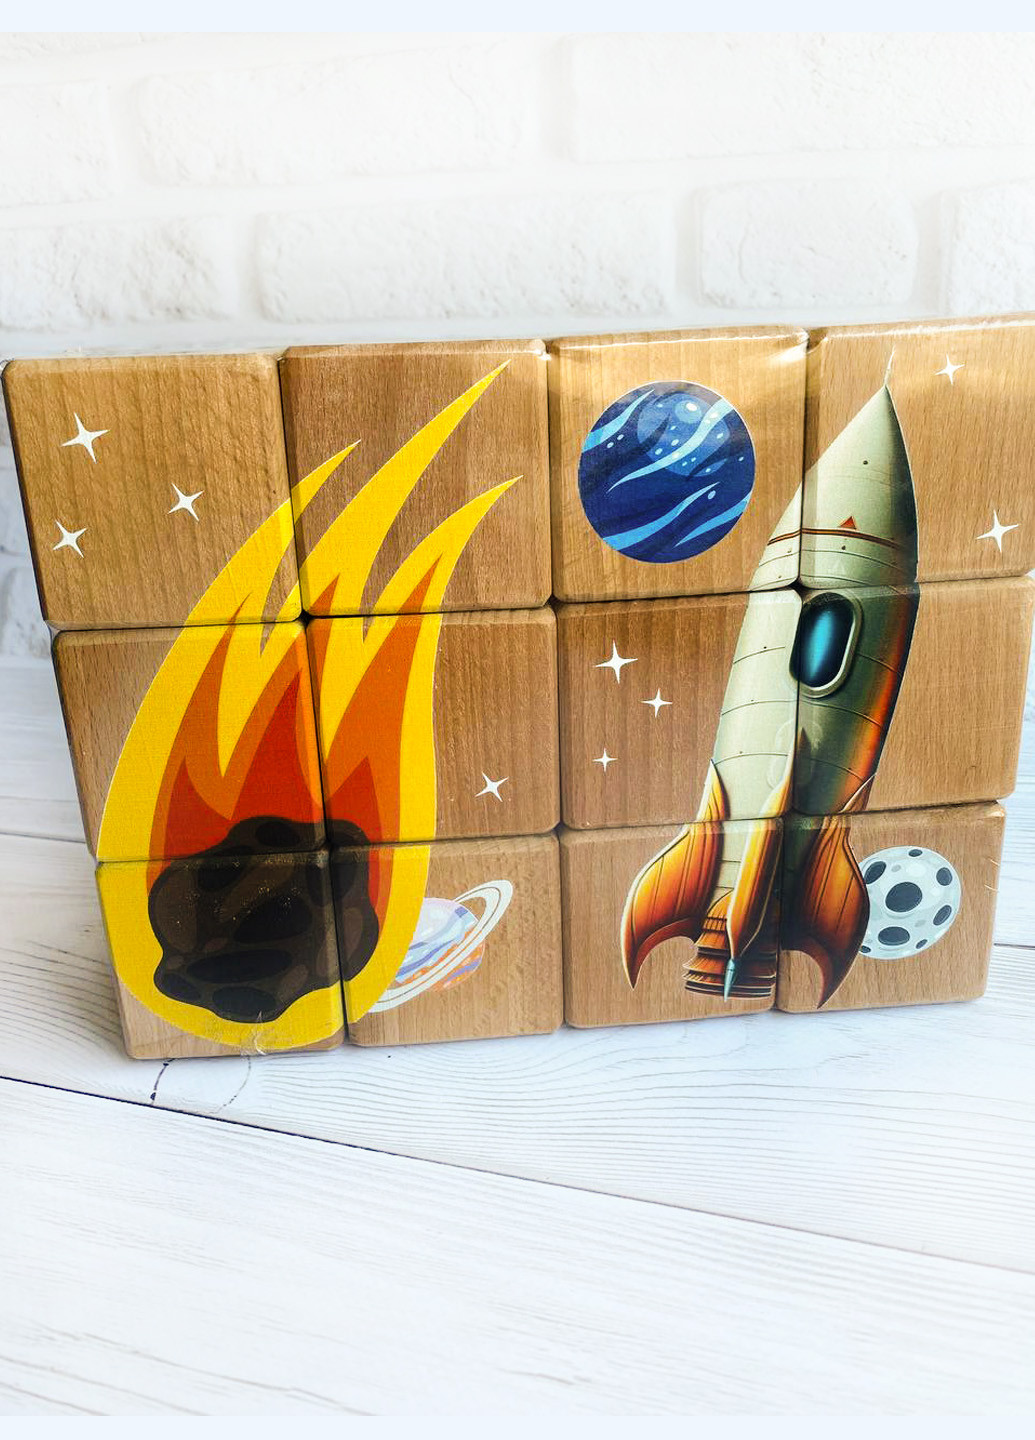 Детские развивающие кубики с изображениями планет "Космос" (комплект 2) Creative (257997030)